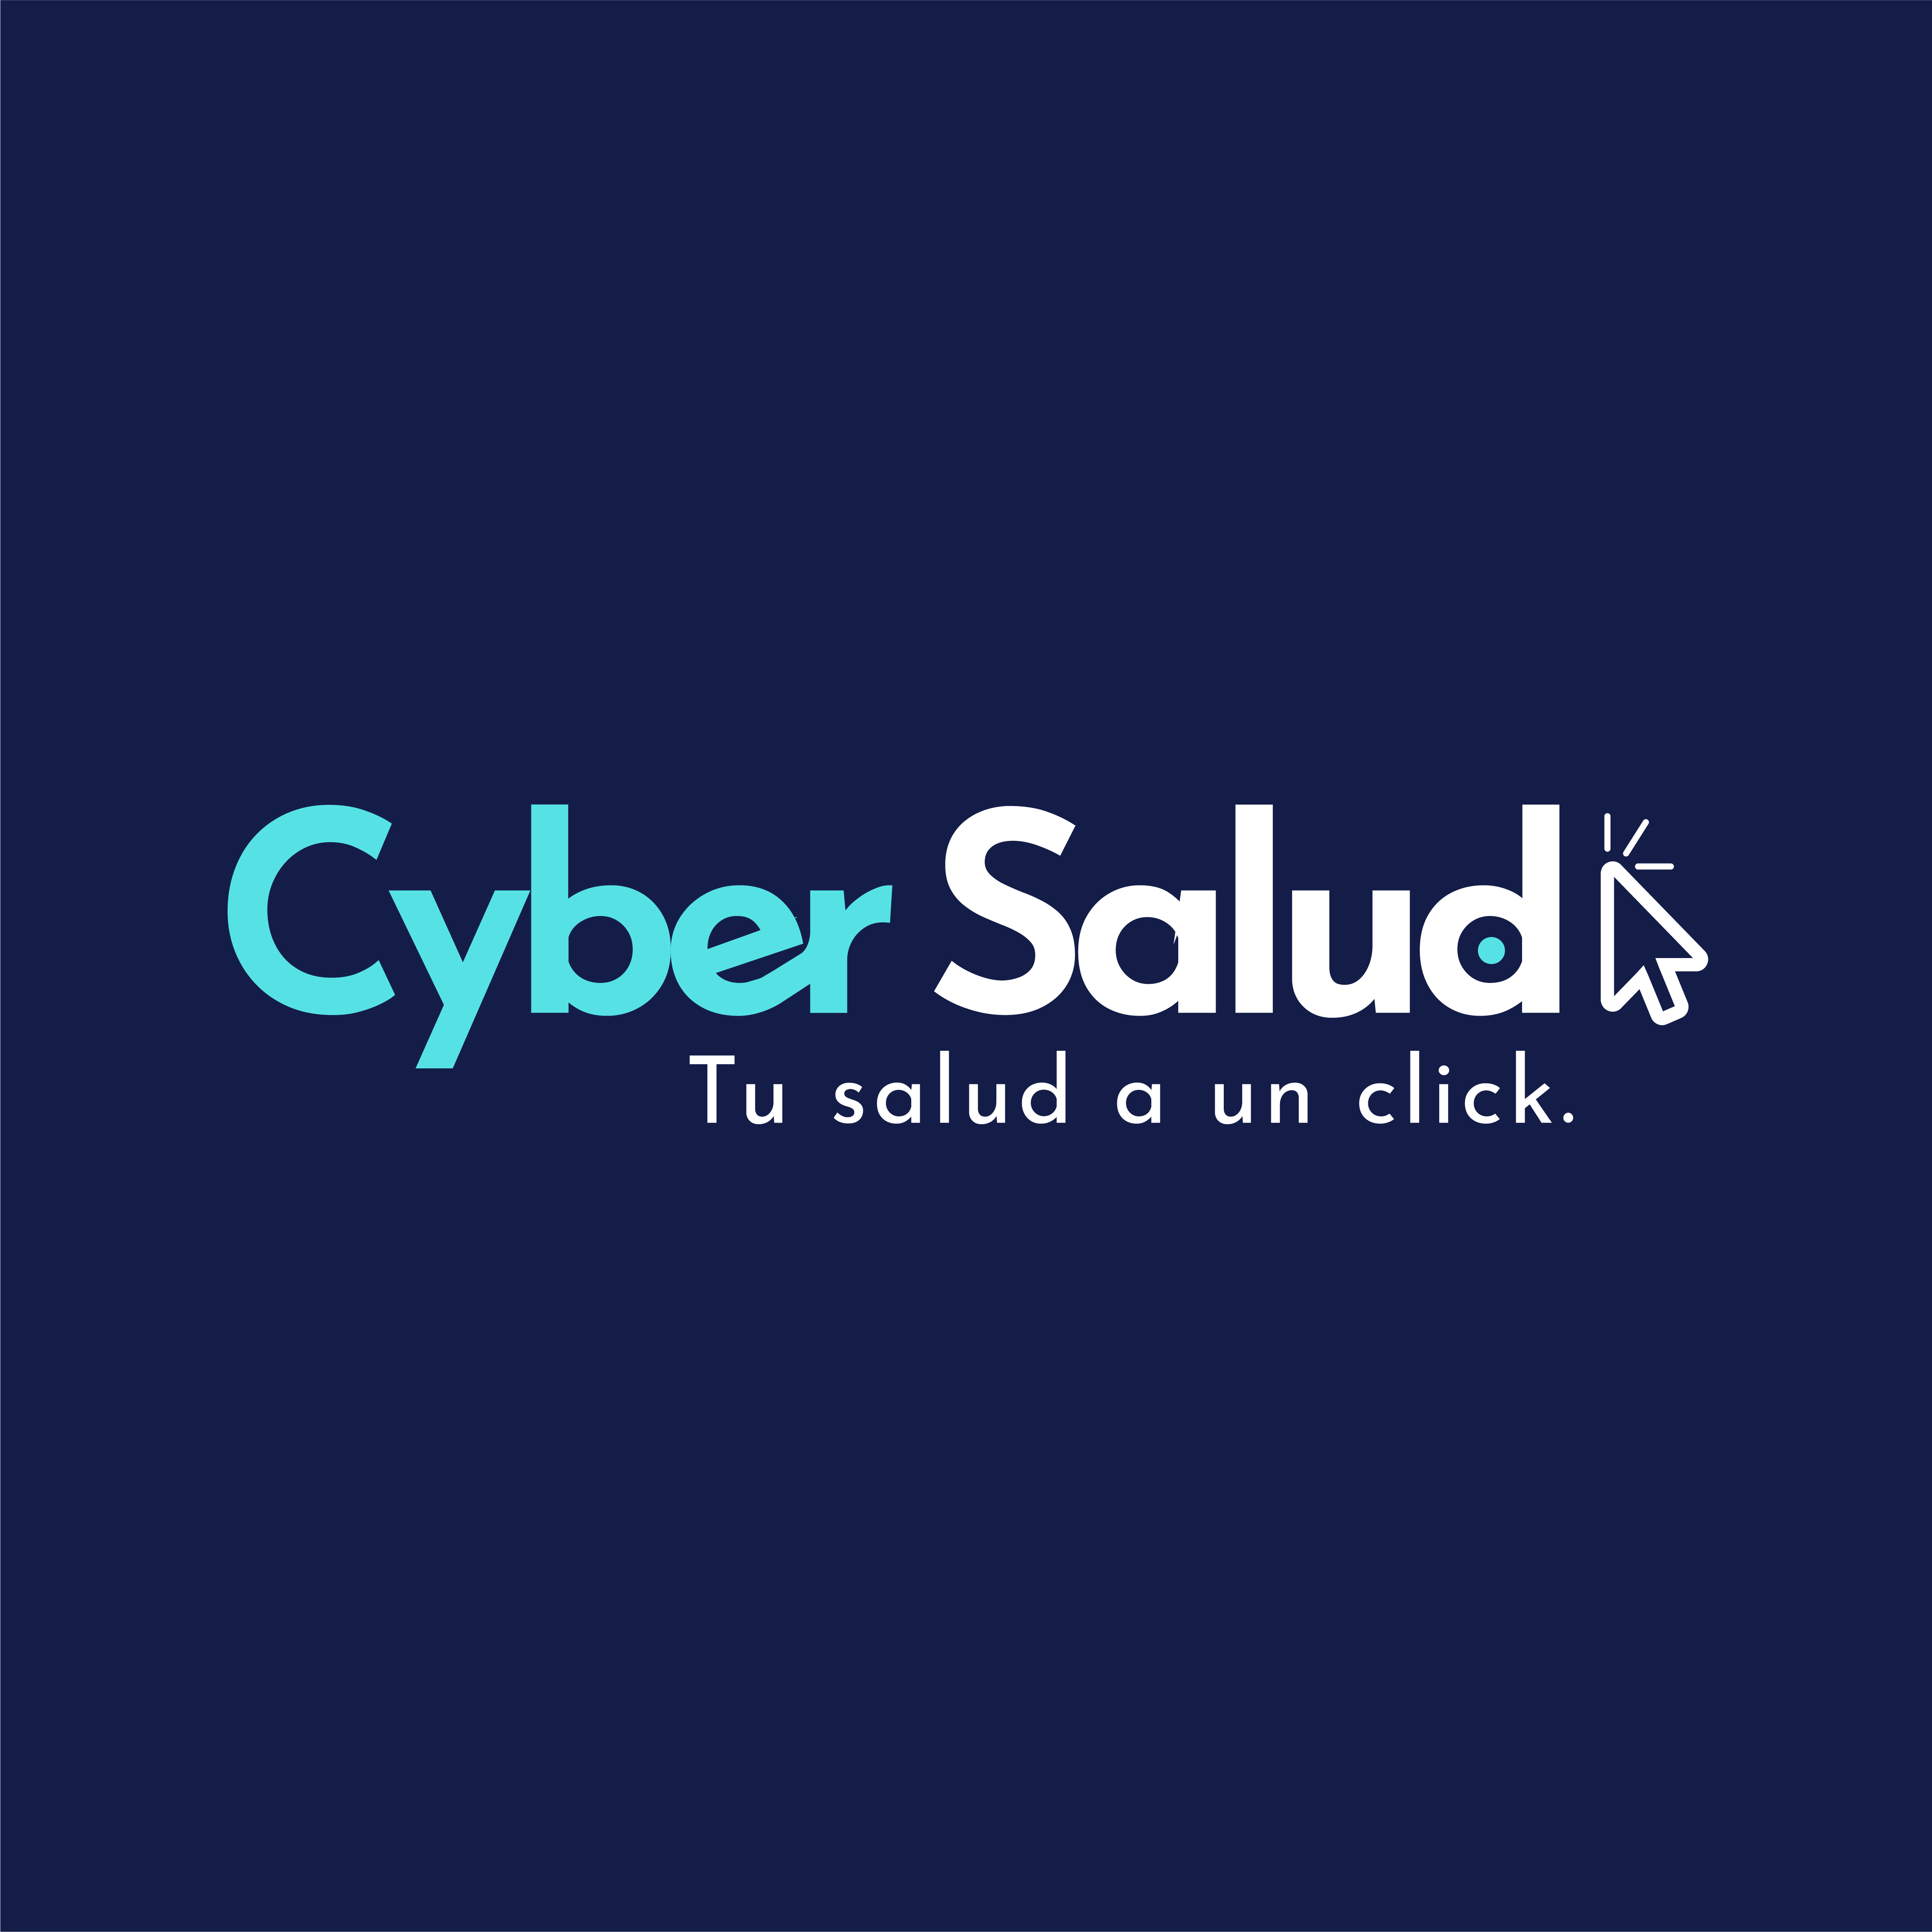 Cyber salud logo